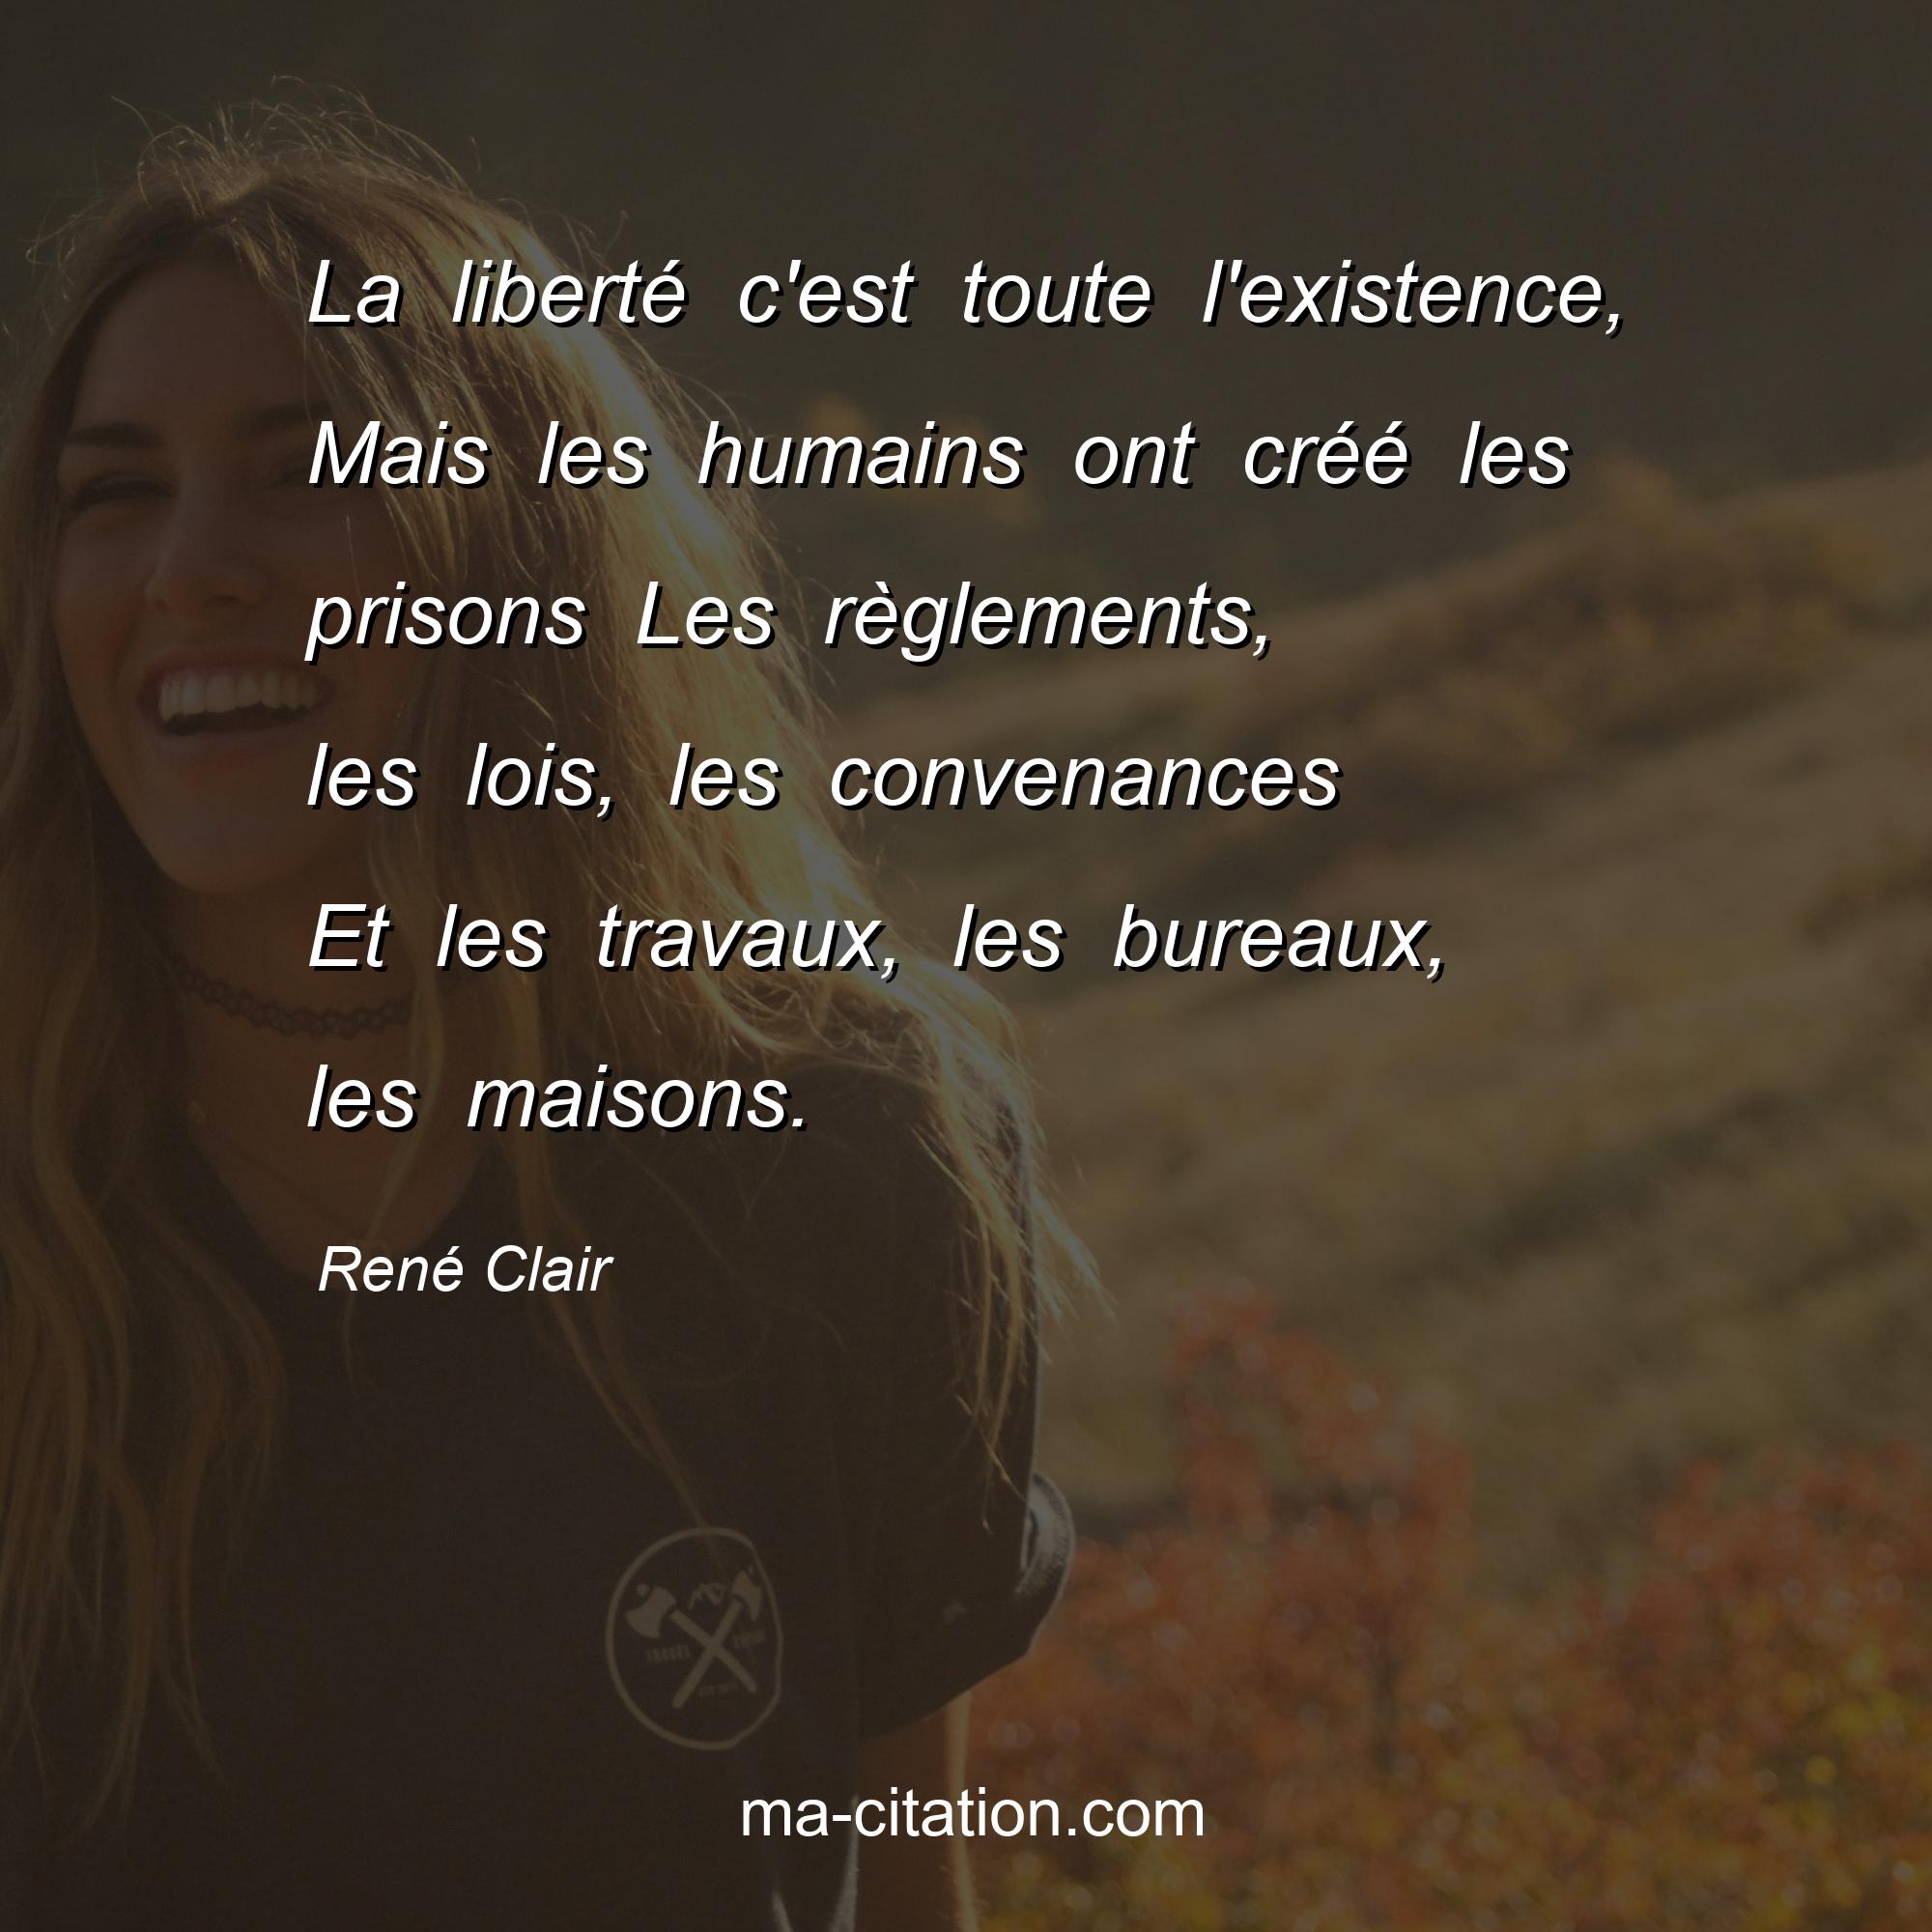 René Clair : La liberté c'est toute l'existence, Mais les humains ont créé les prisons Les règlements, les lois, les convenances Et les travaux, les bureaux, les maisons.